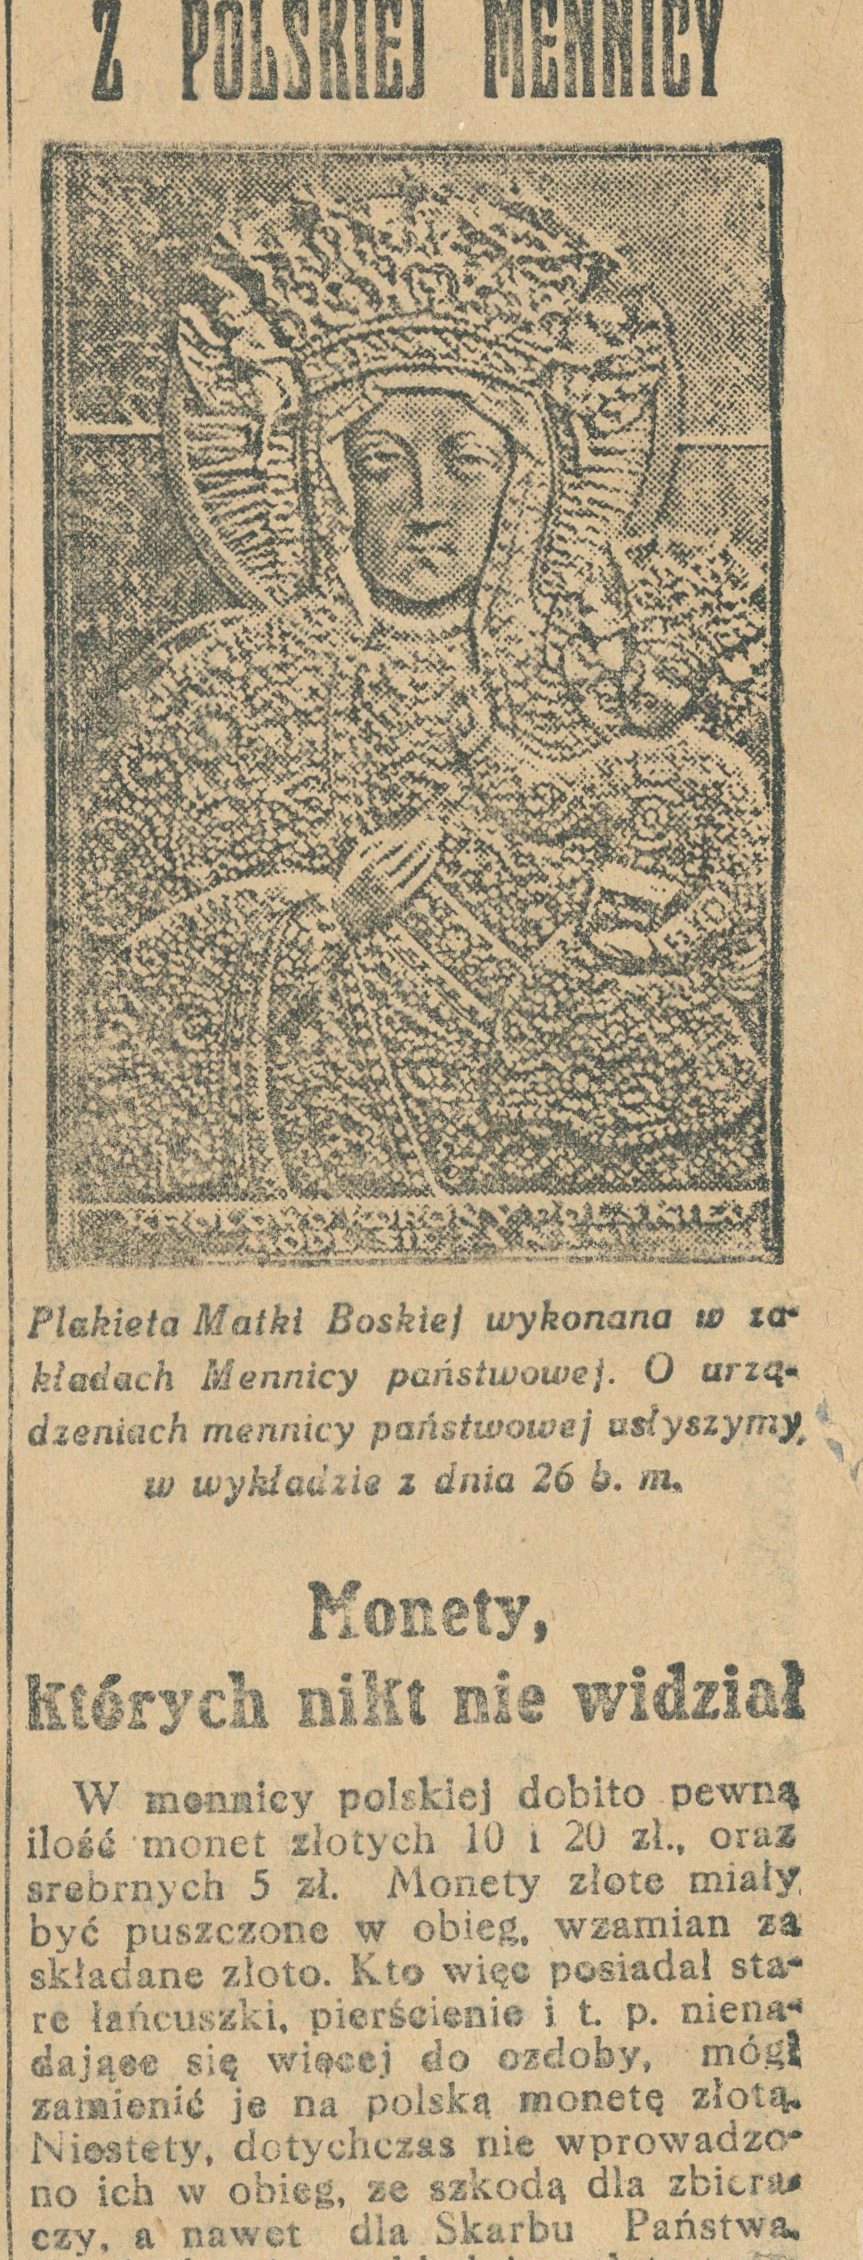 1926-12-19 Radio dobito pewna ilość monet złotych i 5 zł wycinek.jpg